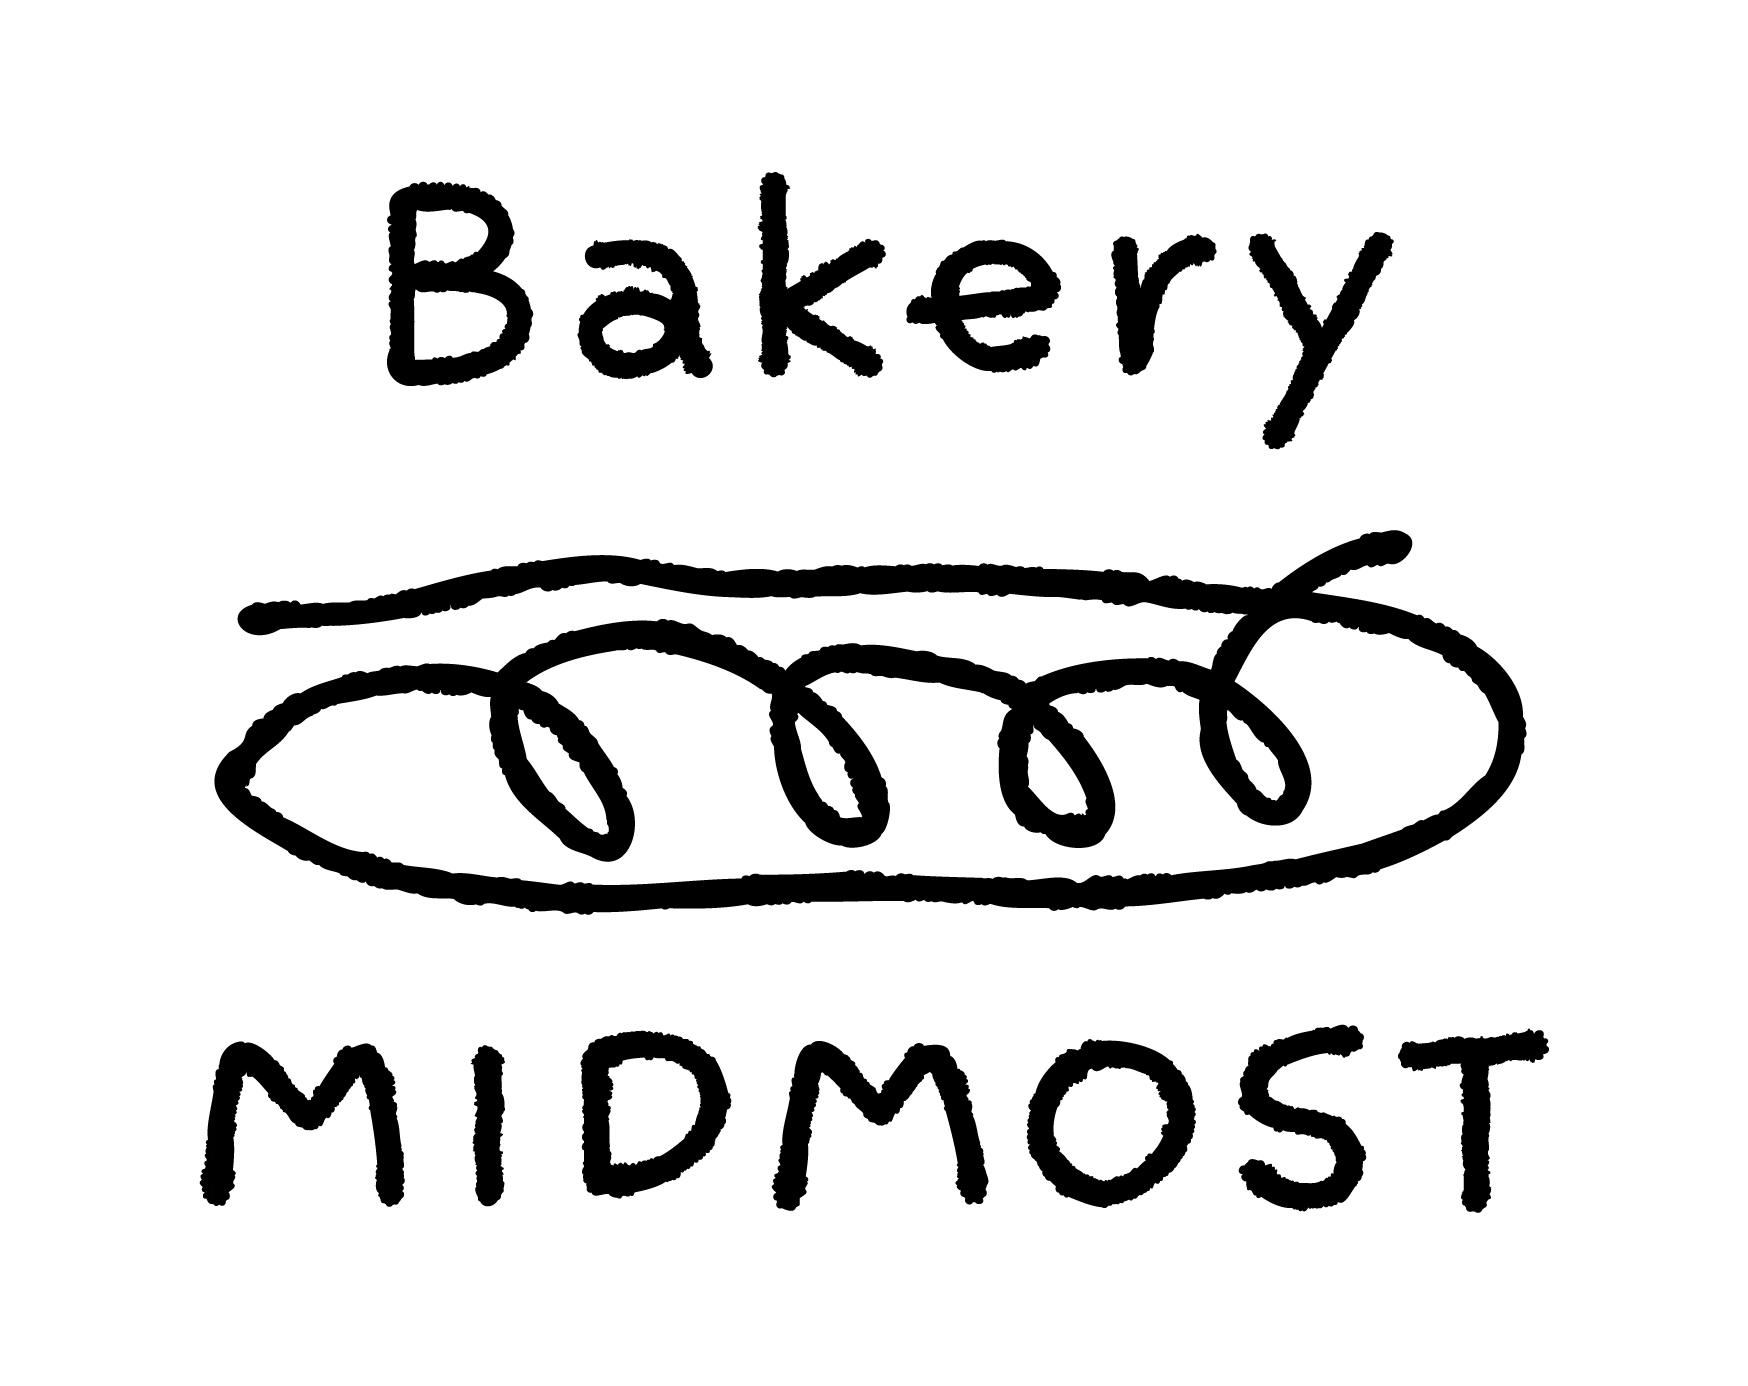 Bakery MIDMOST